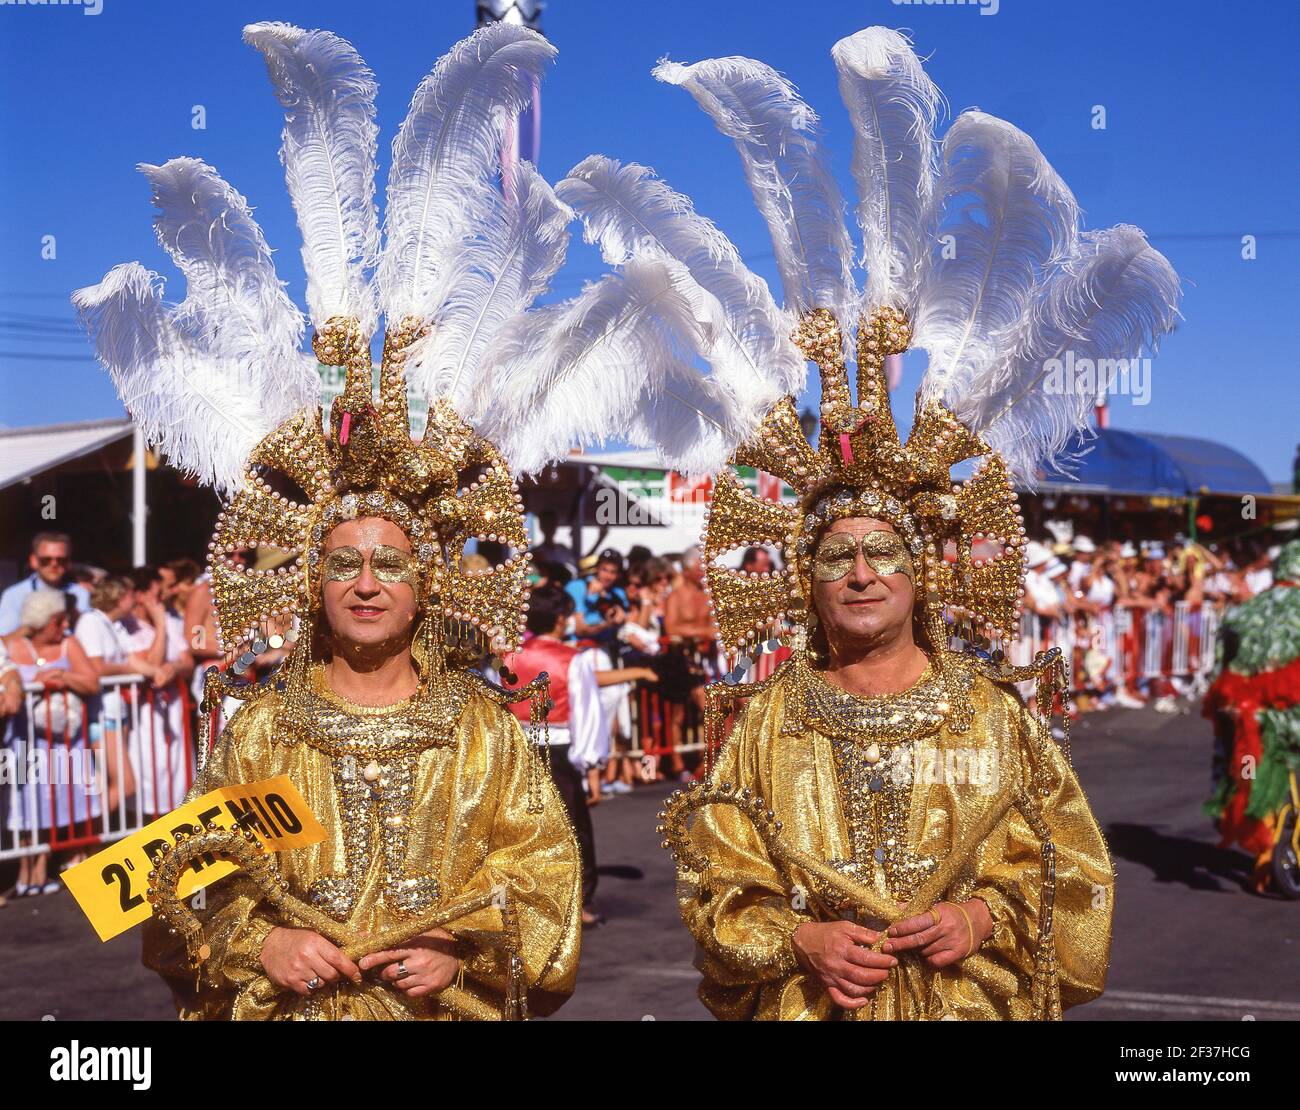 Trajes de colores, Carnaval de Santa Cruz de Tenerife, Santa Cruz, Tenerife, Islas Canarias, España Foto de stock